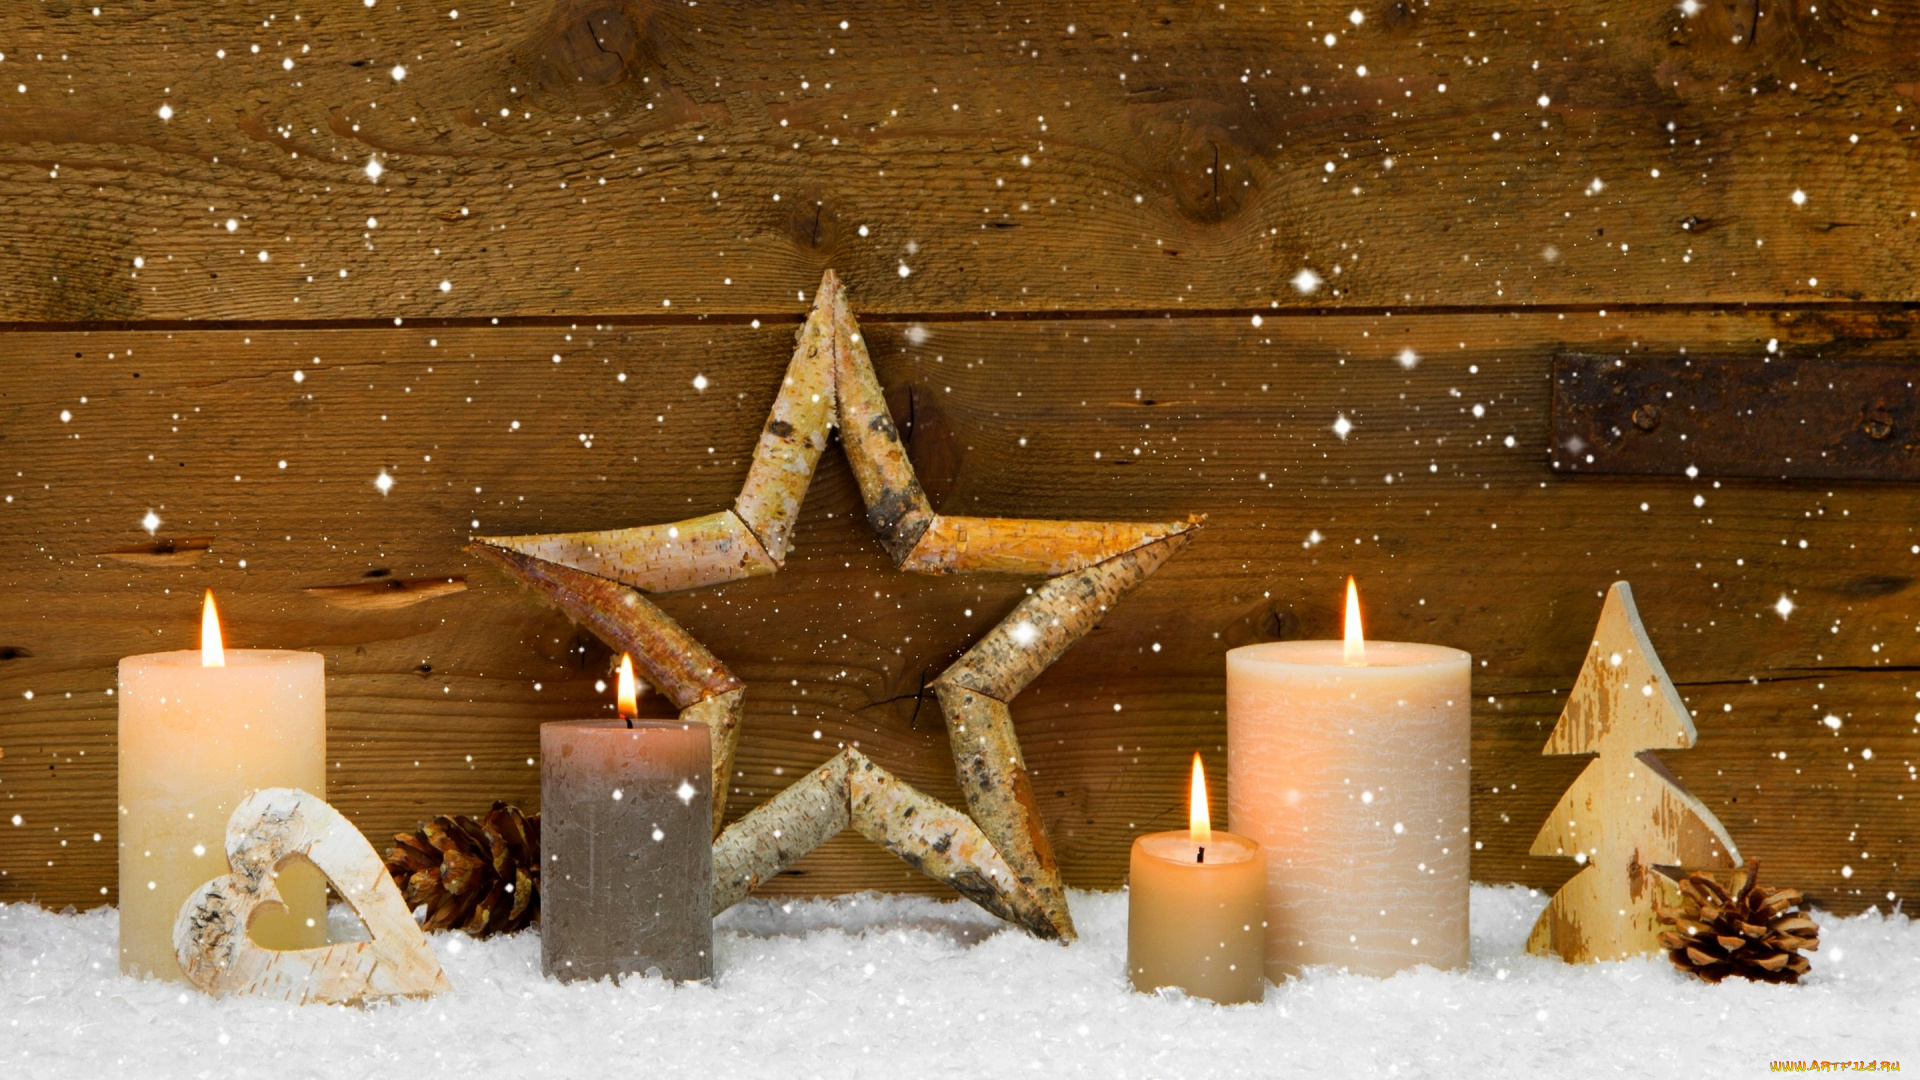 праздничные, новогодние, свечи, winter, candles, star, cones, holiday, heart, merry, christmas, decoration, сердце, праздник, зима, с, рождеством, христовым, рождественские, украшения, свечи, звезды, конусы